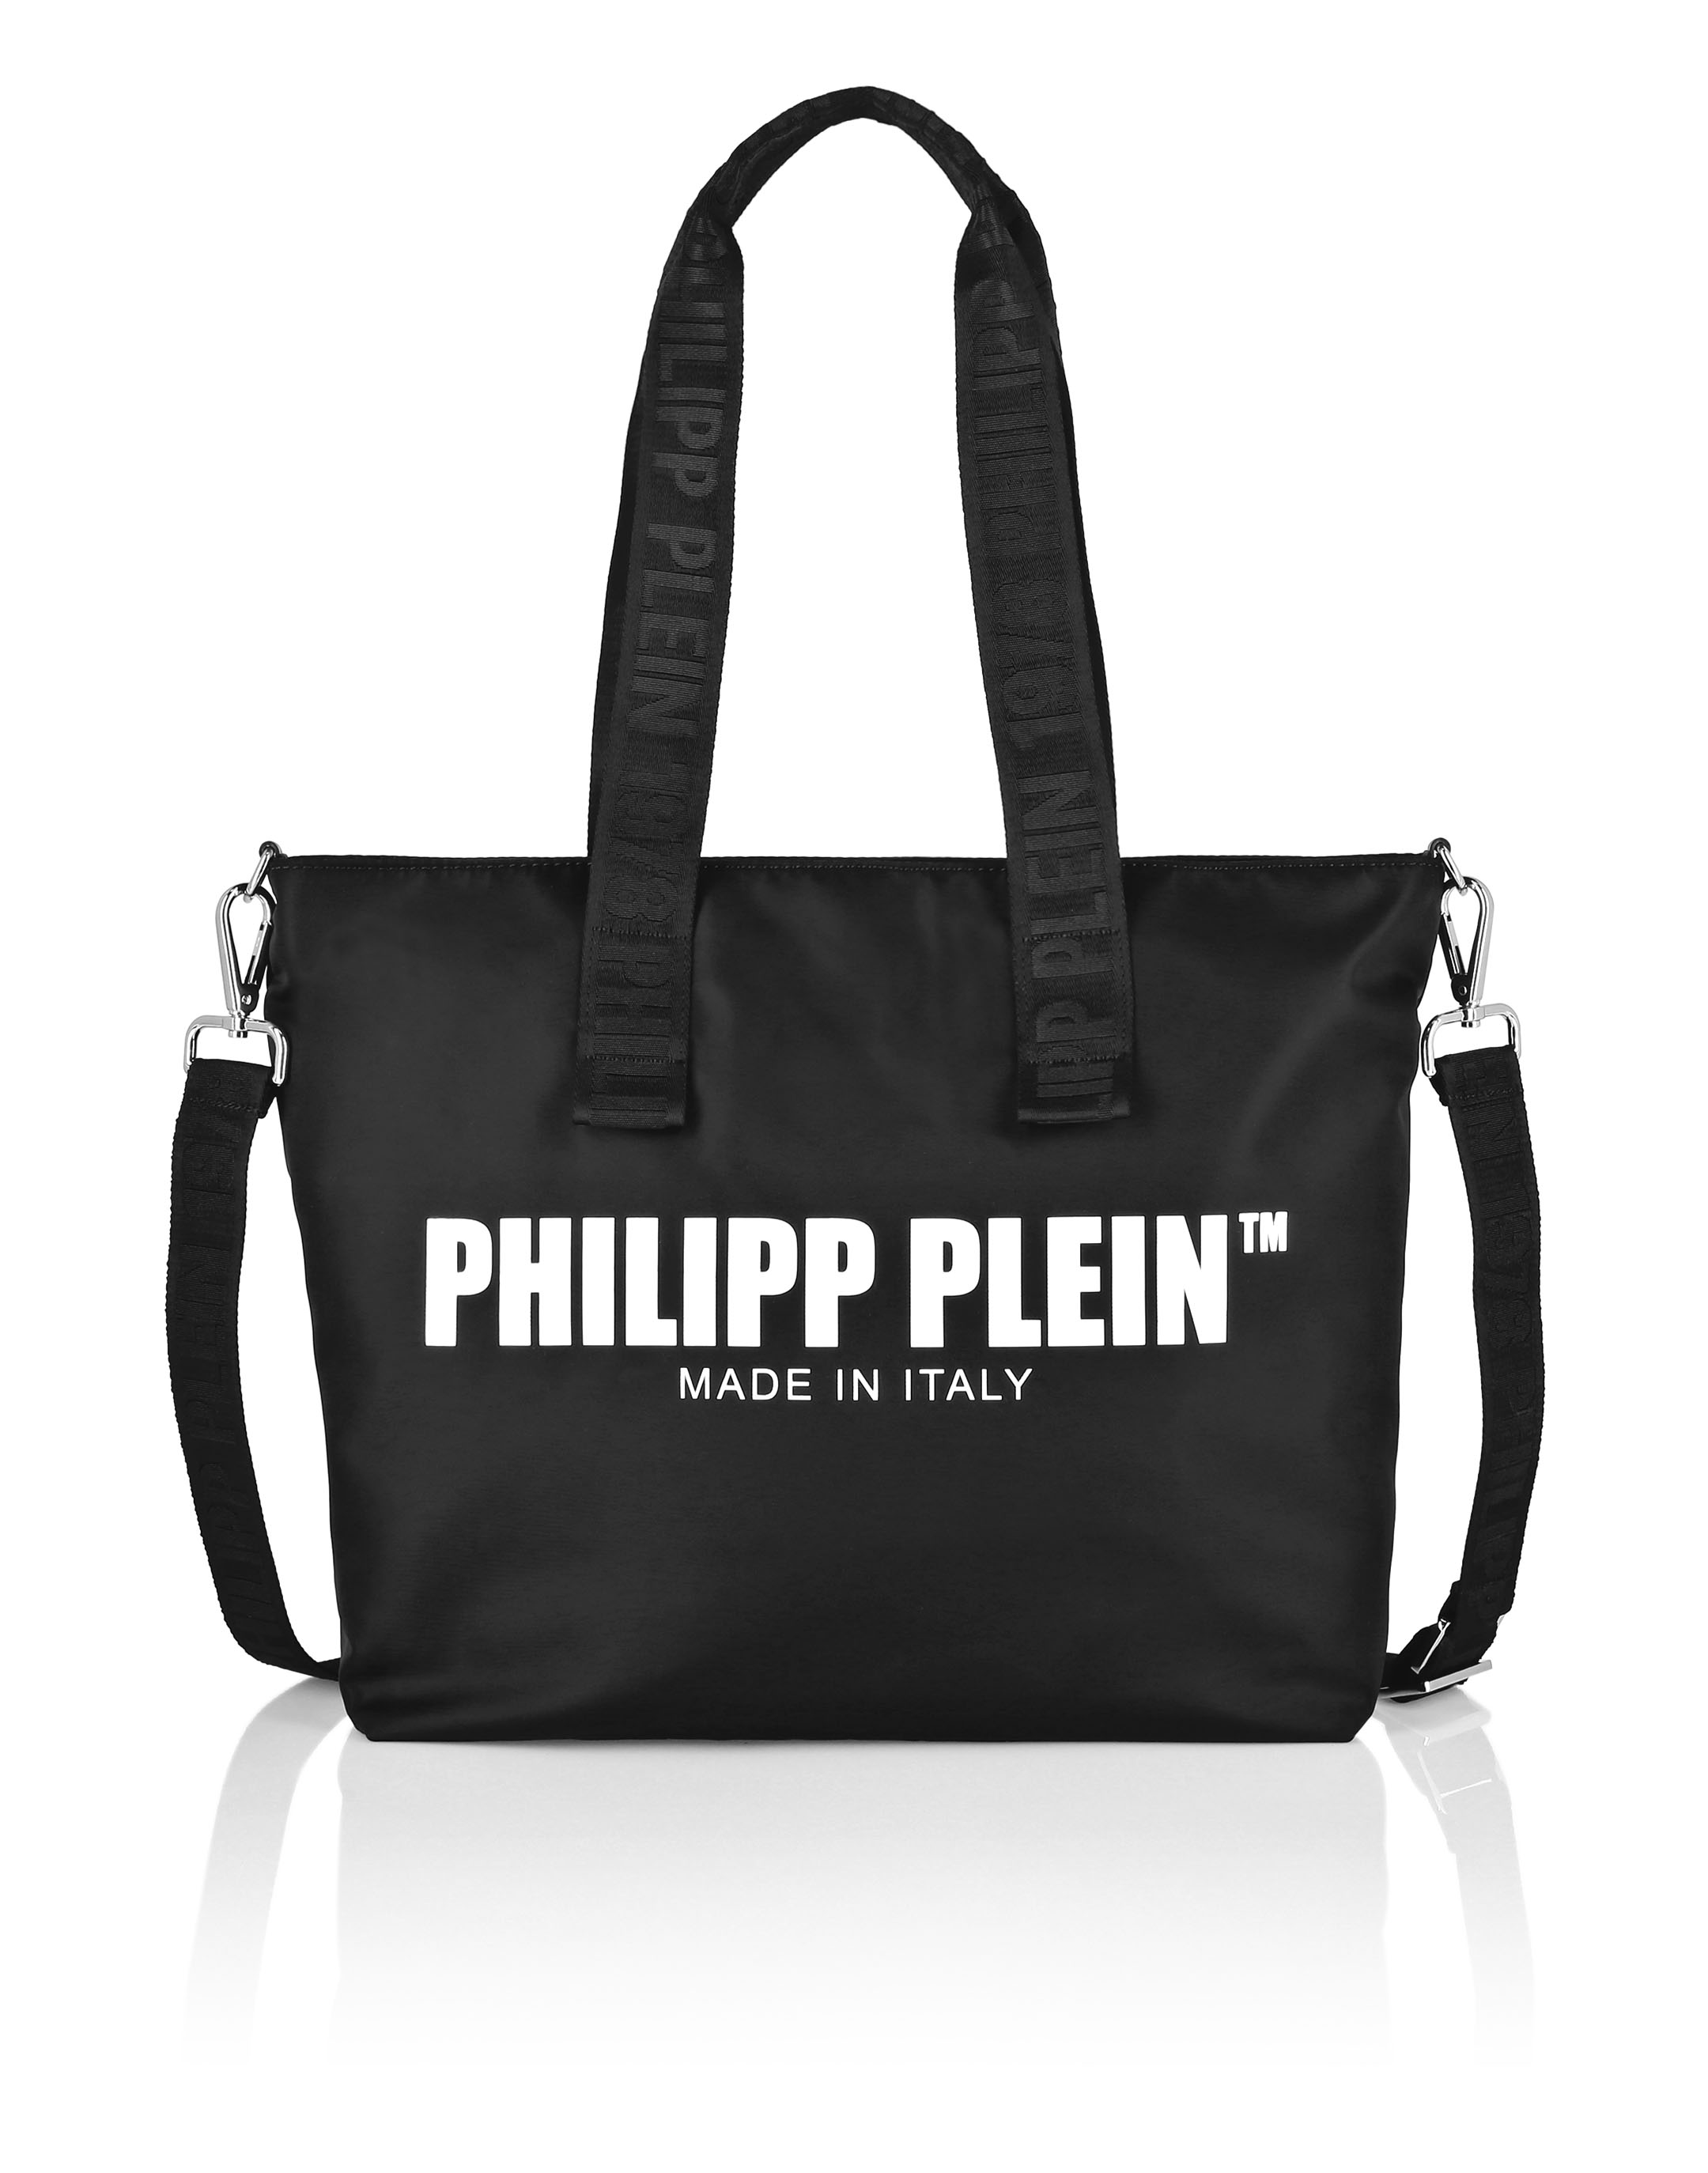 Leather Tote Bag Philipp Plein TM | Philipp Plein Outlet